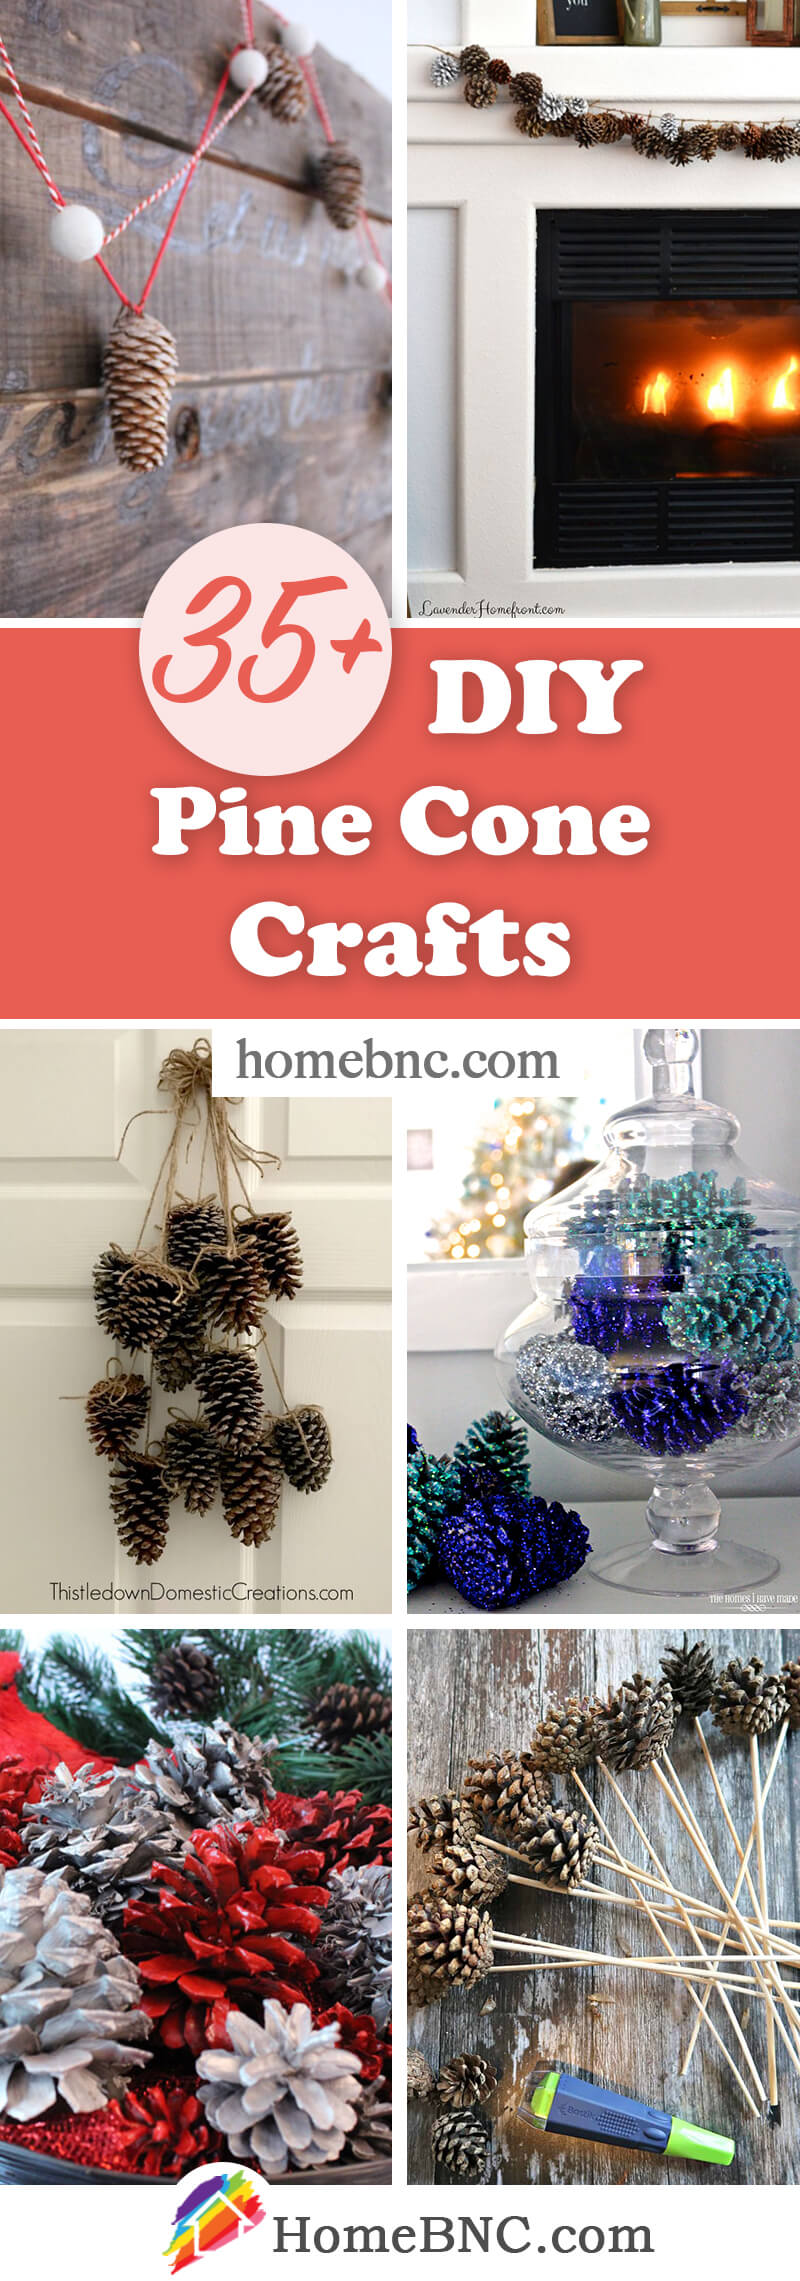 DIY Pine Cone Crafts